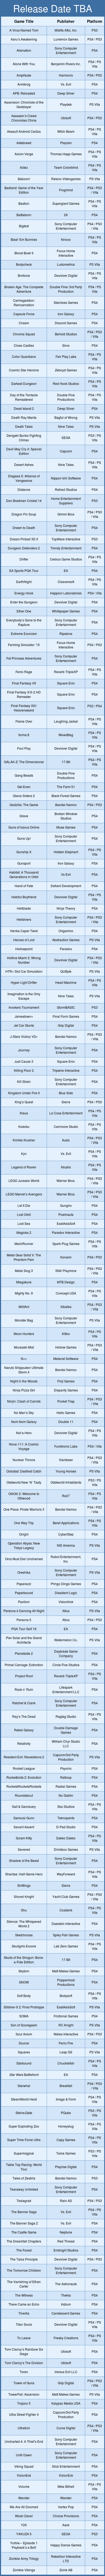 Sony publica una lista de todos los juegos de PS3, PS4 y Vita para 2015